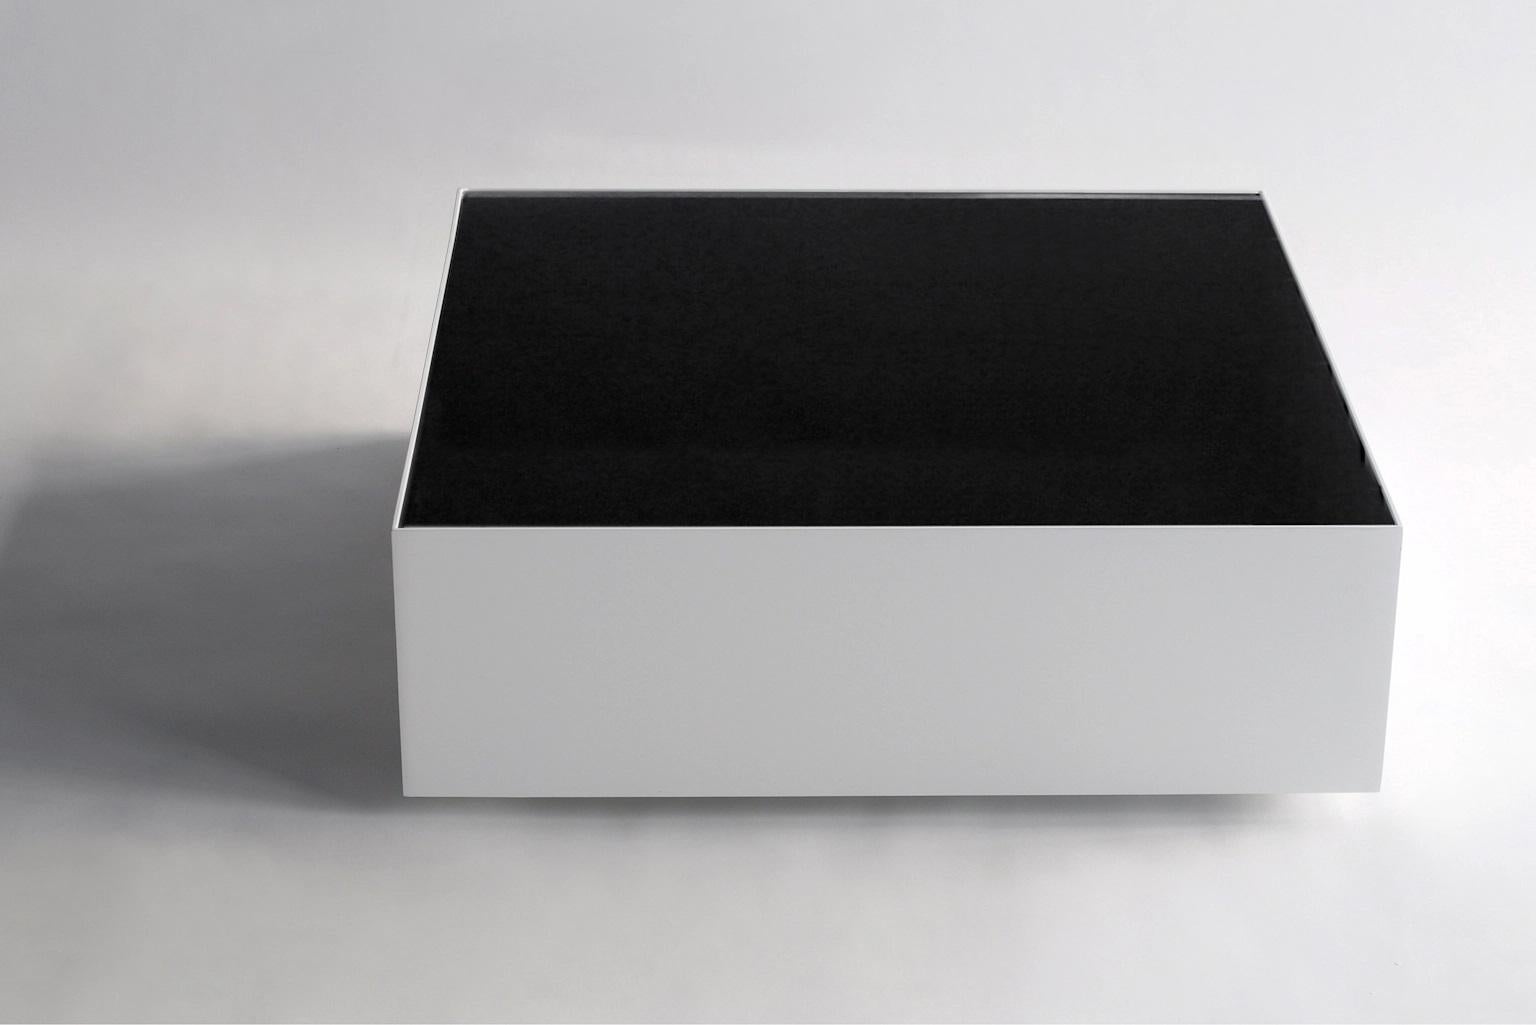 Table basse à glace noire par Phase Design
Dimensions : P 76,2 x L 76,2 x H 25,4 cm.
MATERIAL : Verre de tympan et métal peint par poudrage en blanc.

Table basse en acier avec plateau en verre spandrel. Disponible en finition chrome poli ou